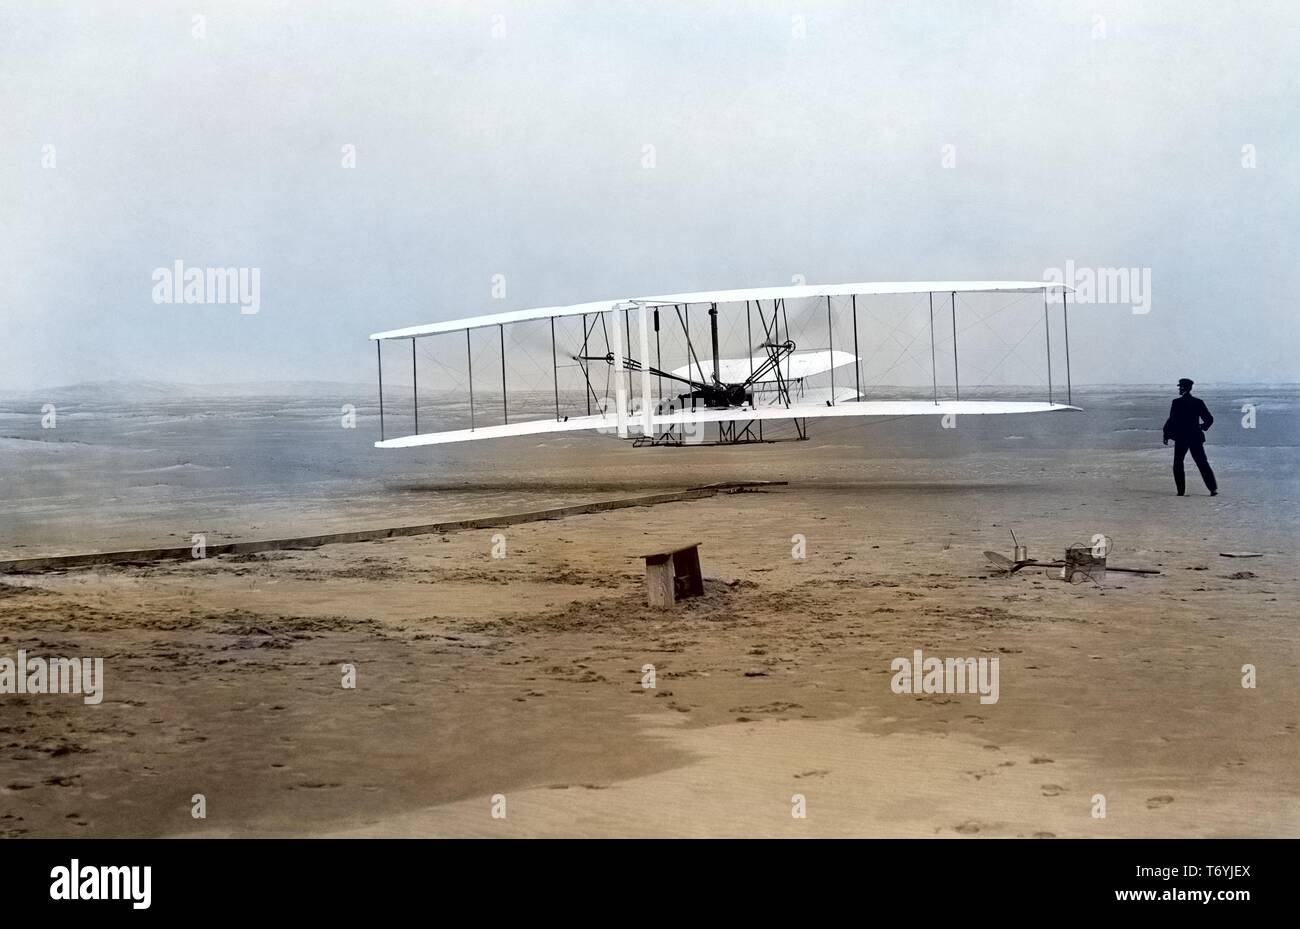 Foto von Orville Wright Pilotierung der historischen ersten angetriebenen Flugzeug, während sein Bruder Wilbur der Flug beobachtet, in Kitty Hawk, North Carolina, 17. Dezember 1903. Hinweis: Das Bild wurde mit einem modernen digitalen Prozess eingefärbt worden; Farben möglicherweise nicht sein - genau. () Stockfoto